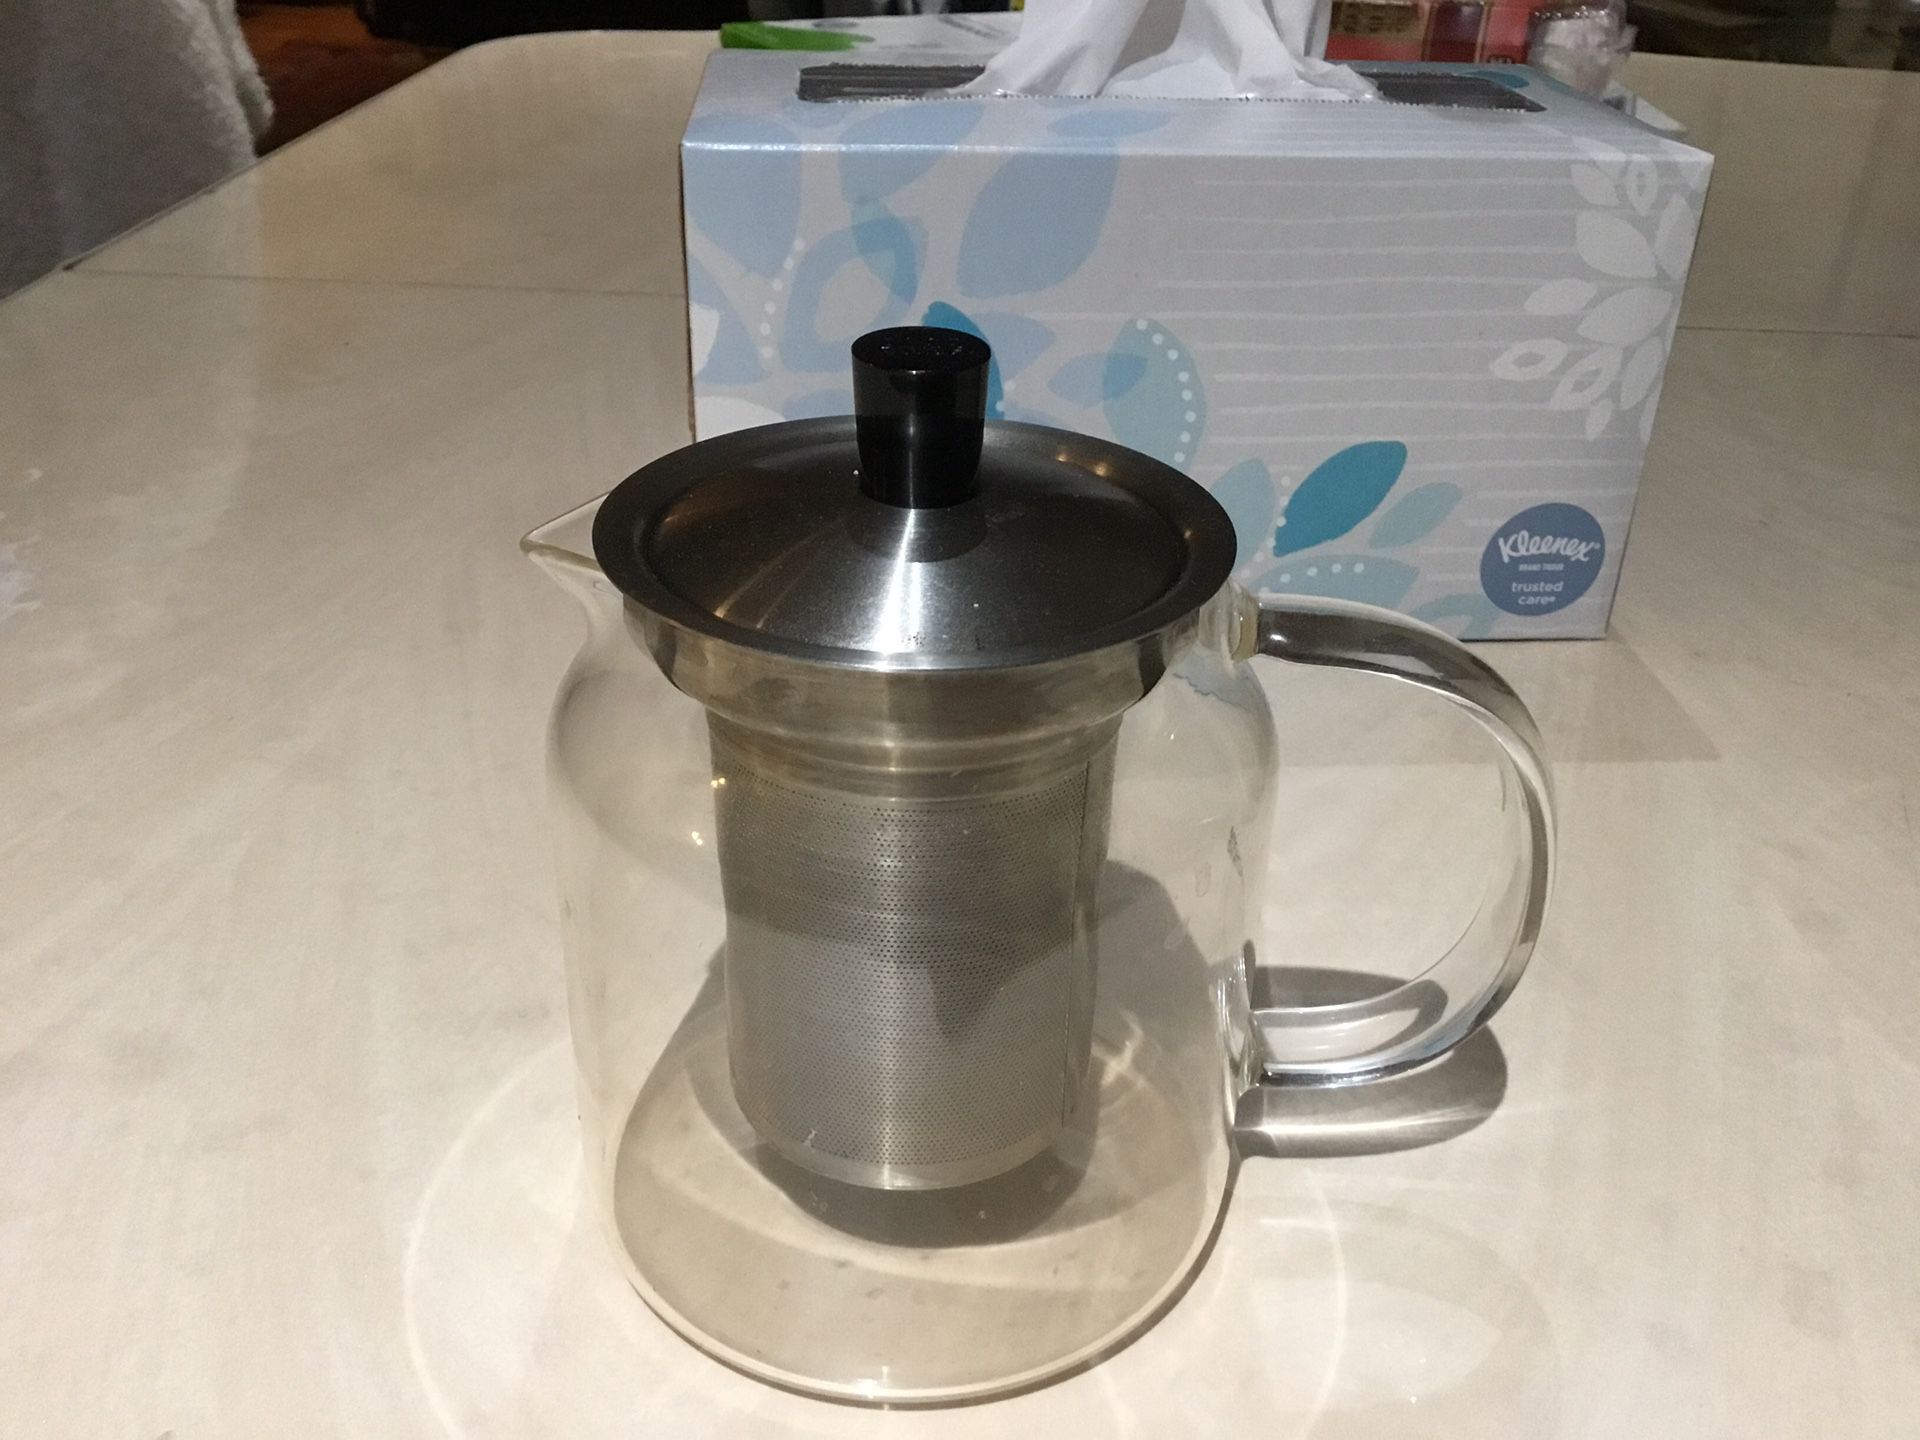 Tea pot with mesh tea infuser